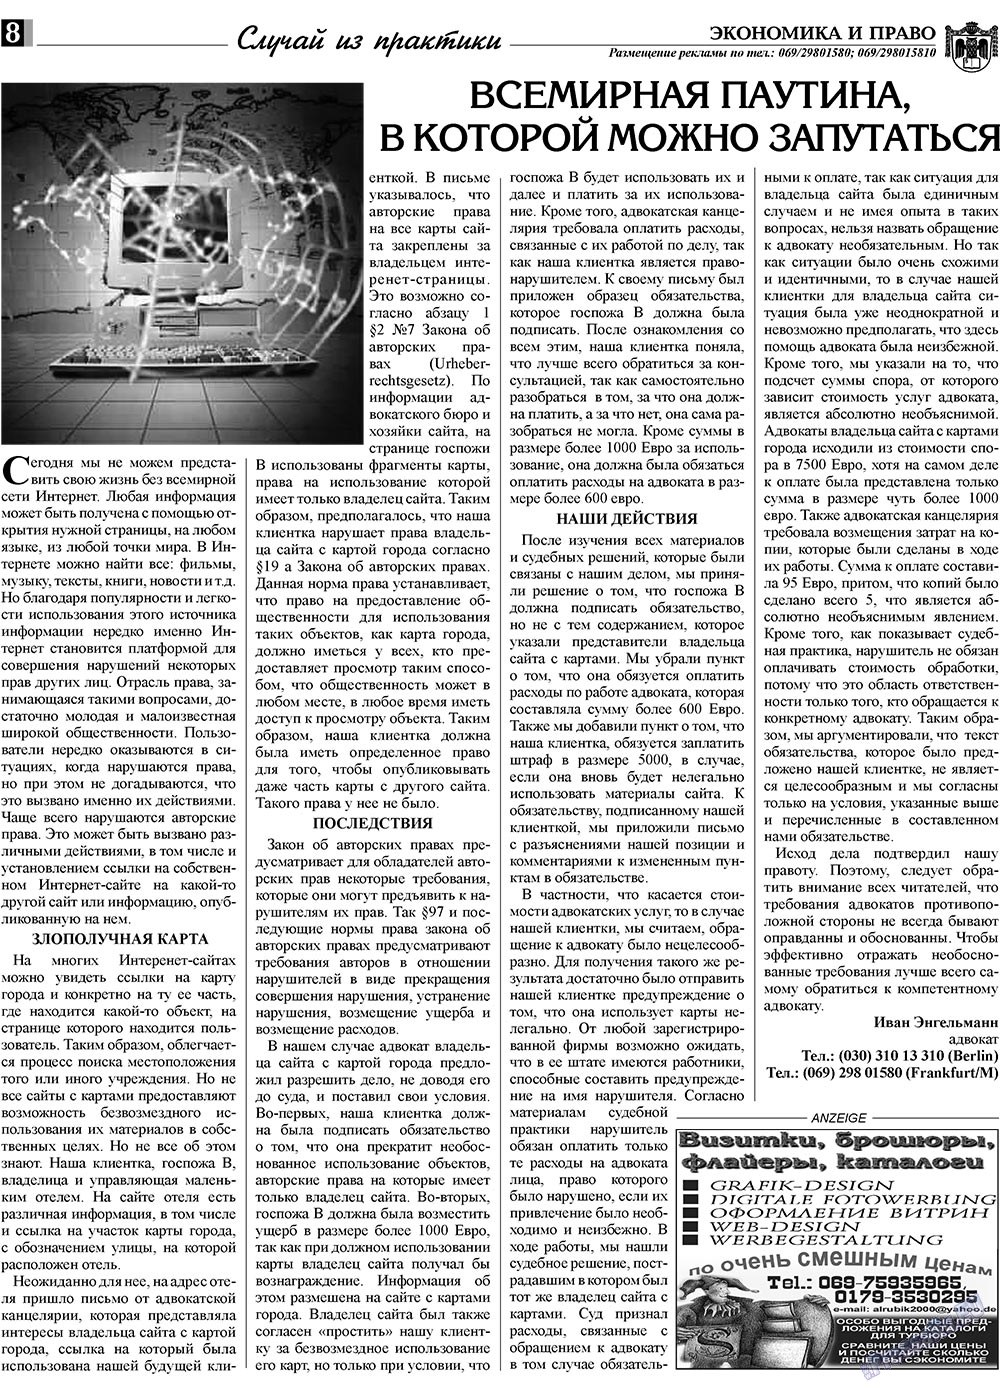 Экономика и право, газета. 2009 №2 стр.8